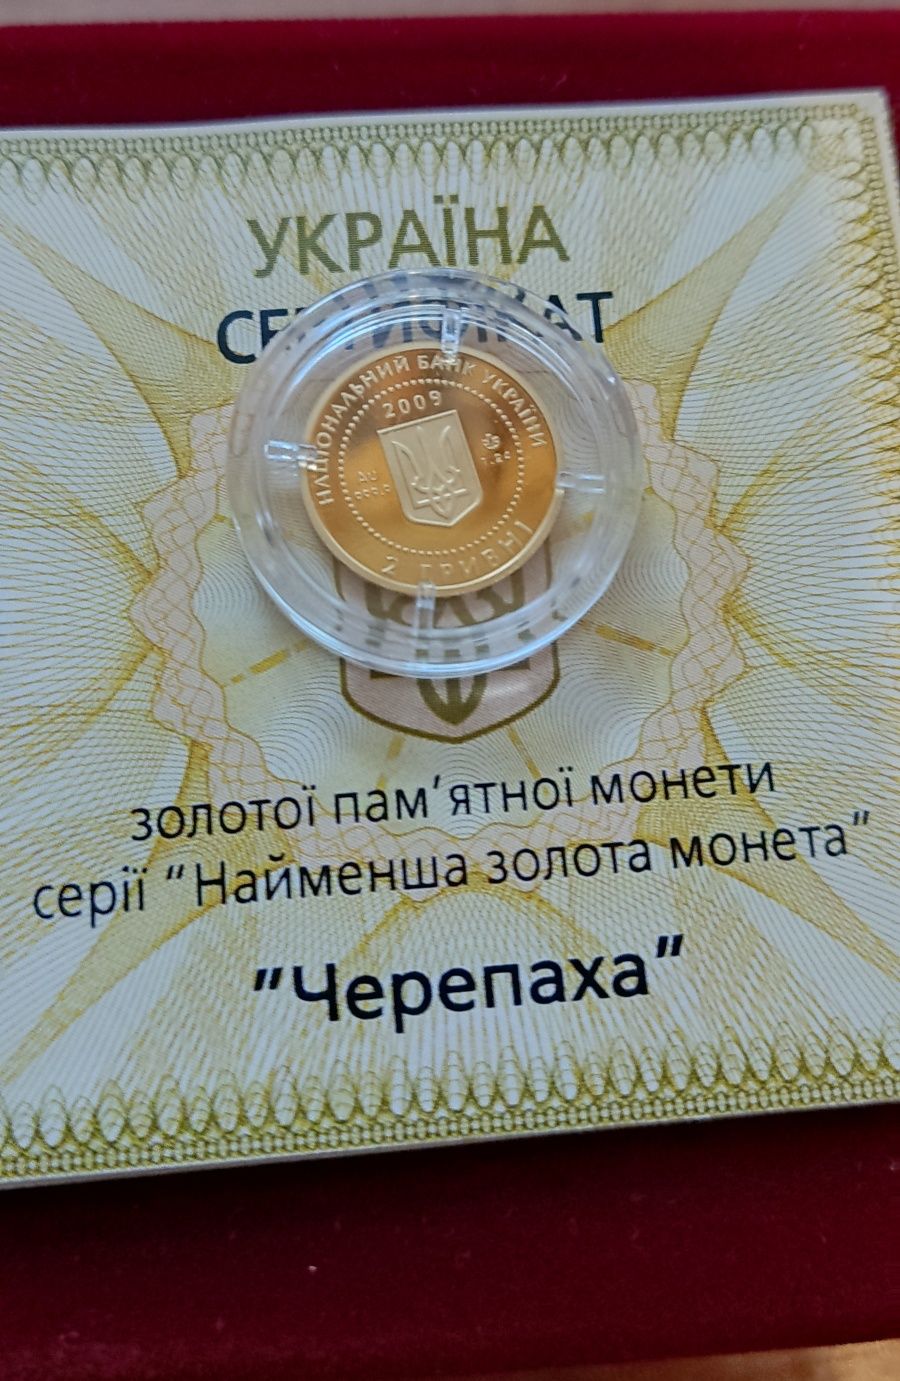 Золотые монеты НБУ 2 грн. "Черепаха" и "Дева"